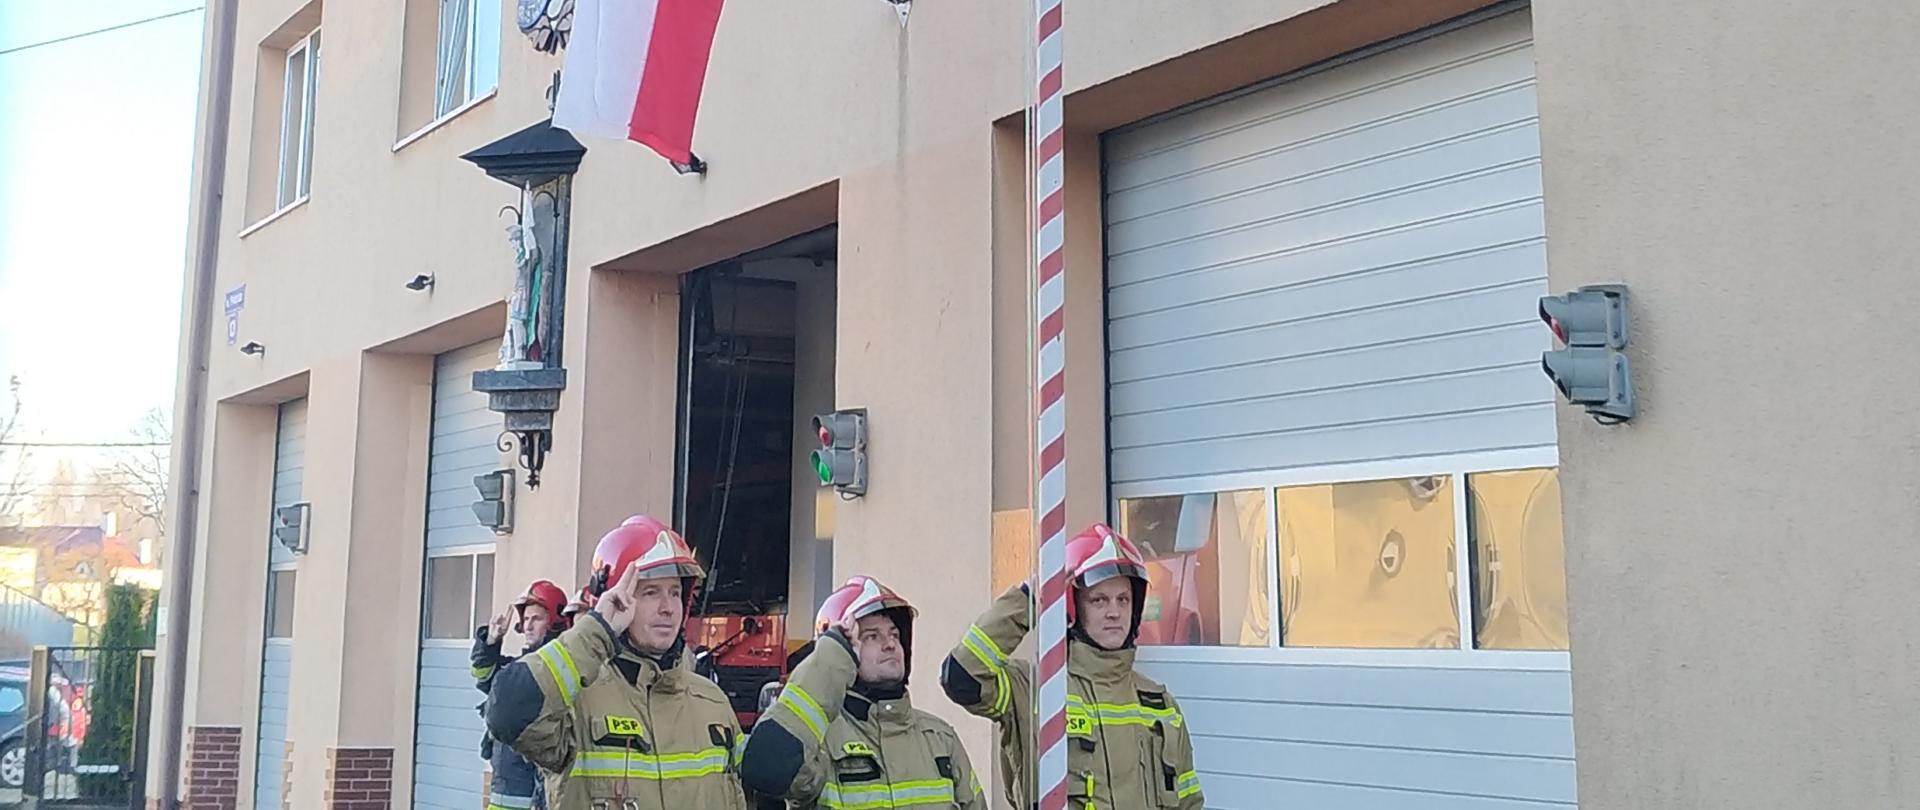 Przy budynku stoi kilku strażaków, przed nimi poczet flagowy salutuje przy maszcie z flagą Polski. Przed masztem zielone przycięte krzewy. Po lewej asfaltowy plac.
